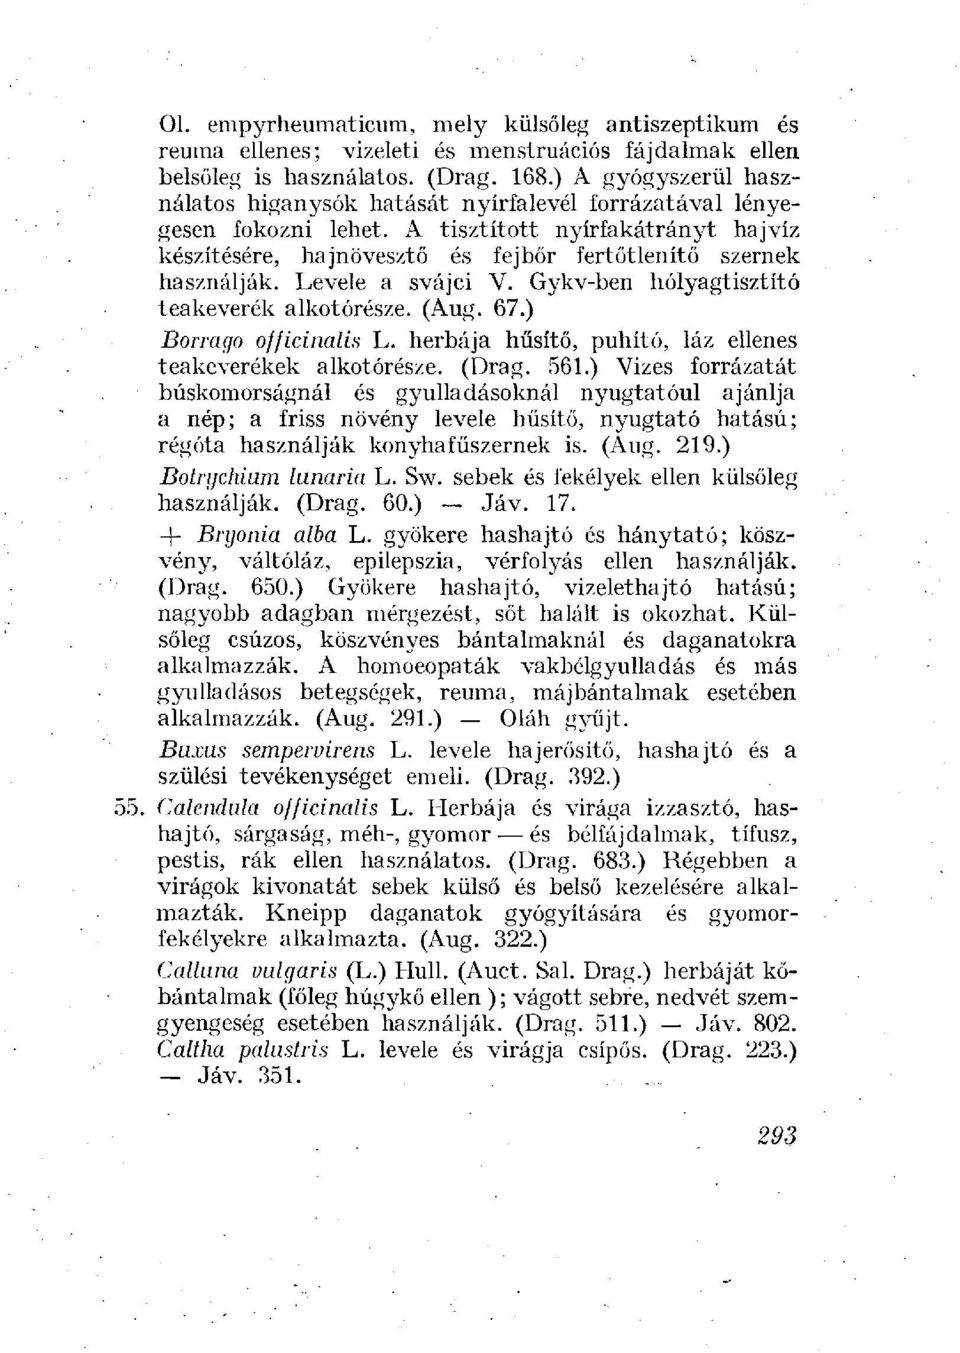 Levele a svájci V. Gykv-ben hólyagtisztító teakeverék alkotórésze. (Aug. 67.) Borrago officinalis L. herbája hűsítő, puhító, láz ellenes teakeverékek alkotórésze. (Drag. 561.